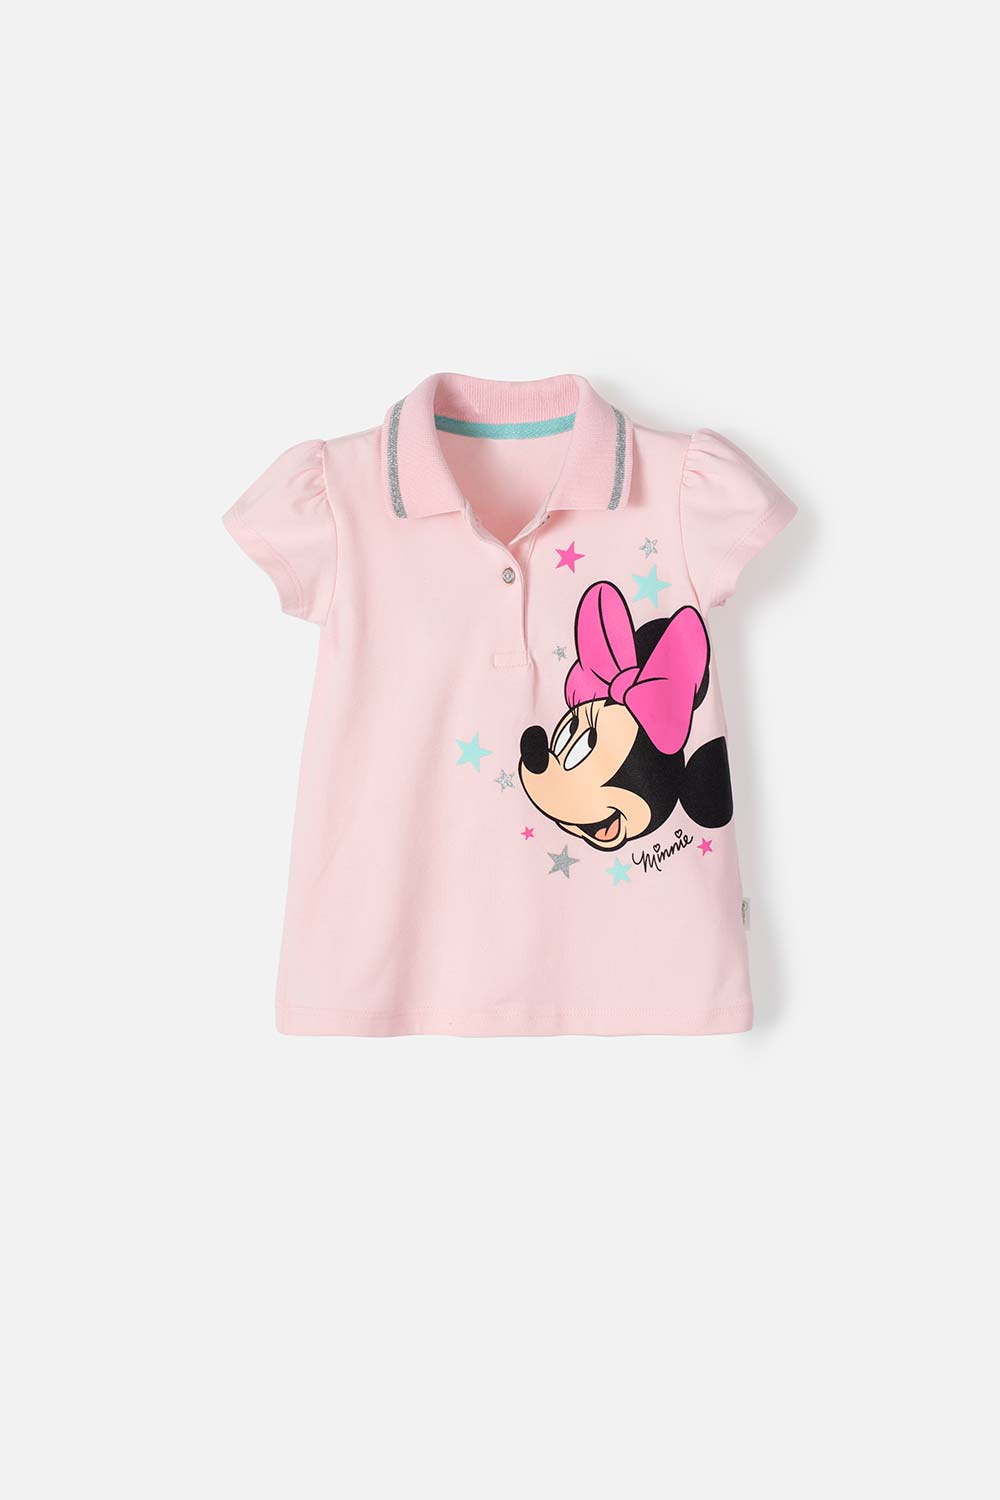 Camiseta de Minnie Mouse rosada tipo polo para niña 2T a 5T 2T-0